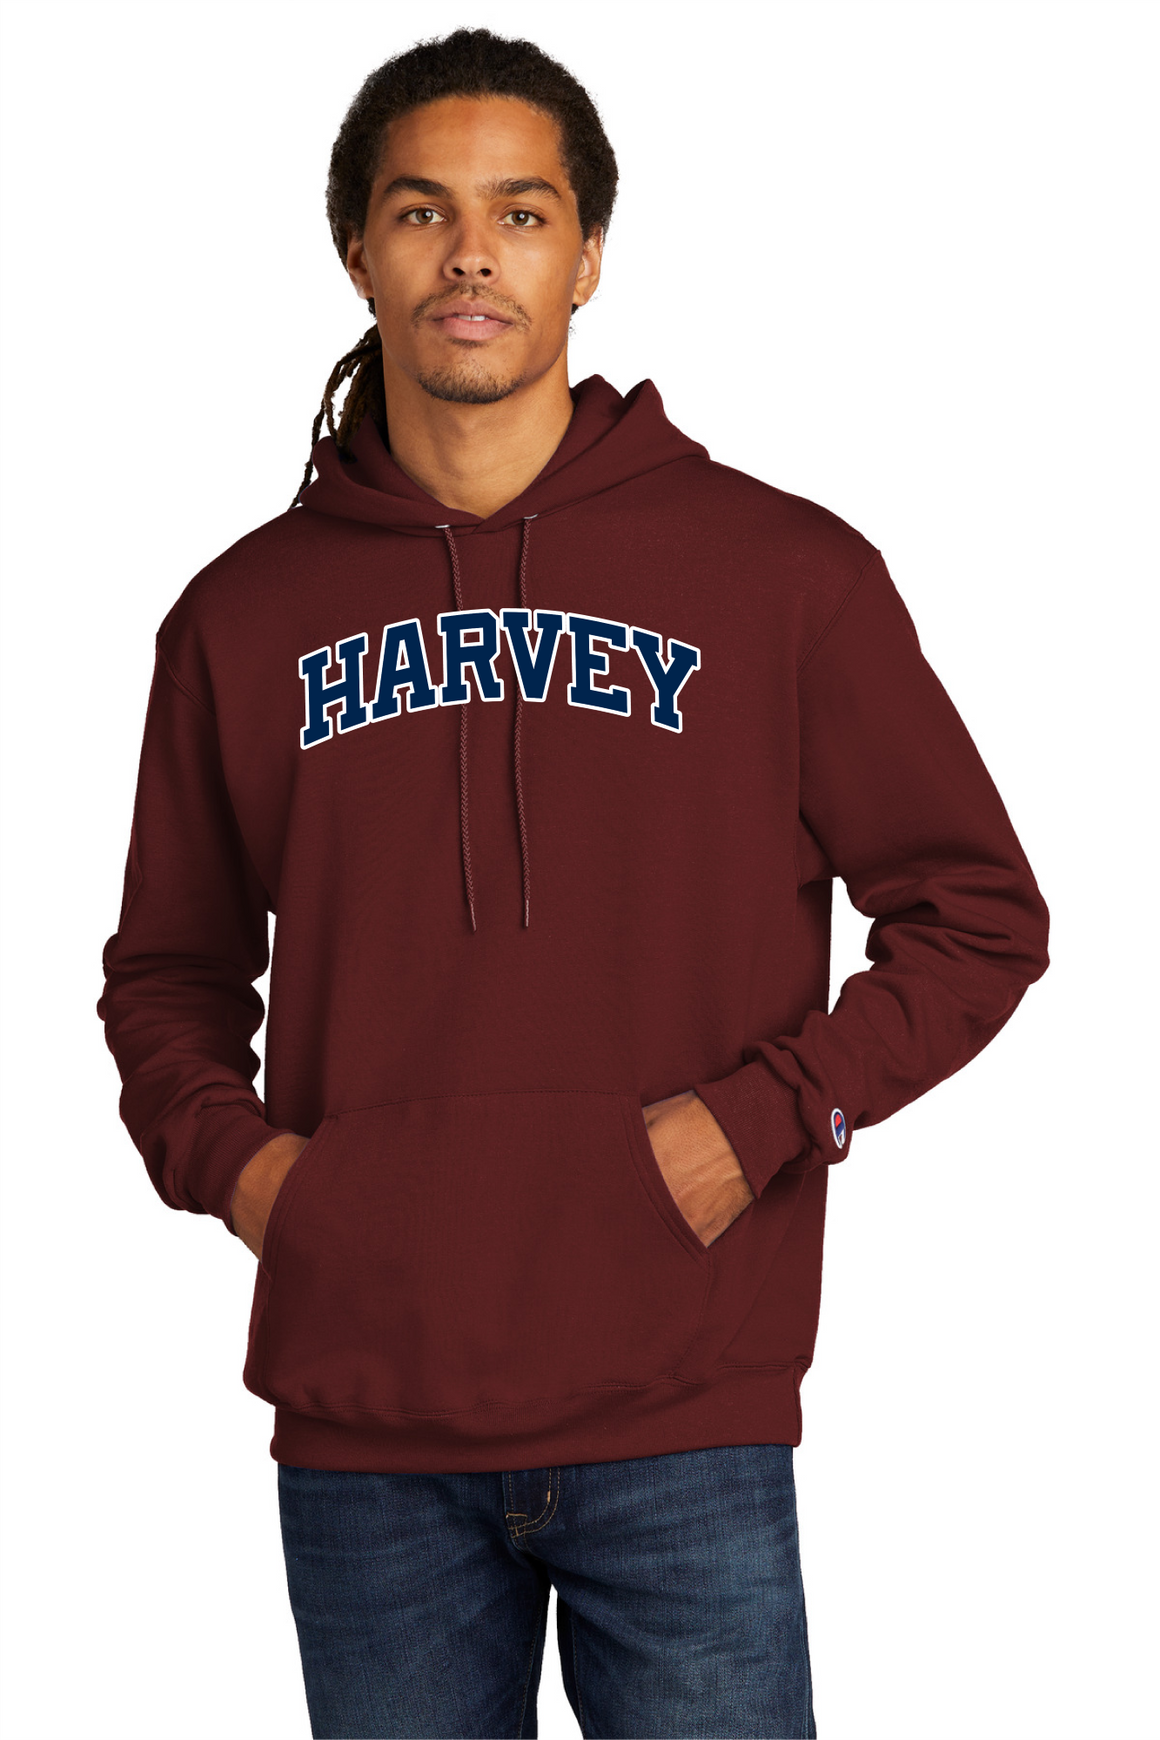 Harvey School Champion Vintage Applique Arc Logo Pullover Hoodie